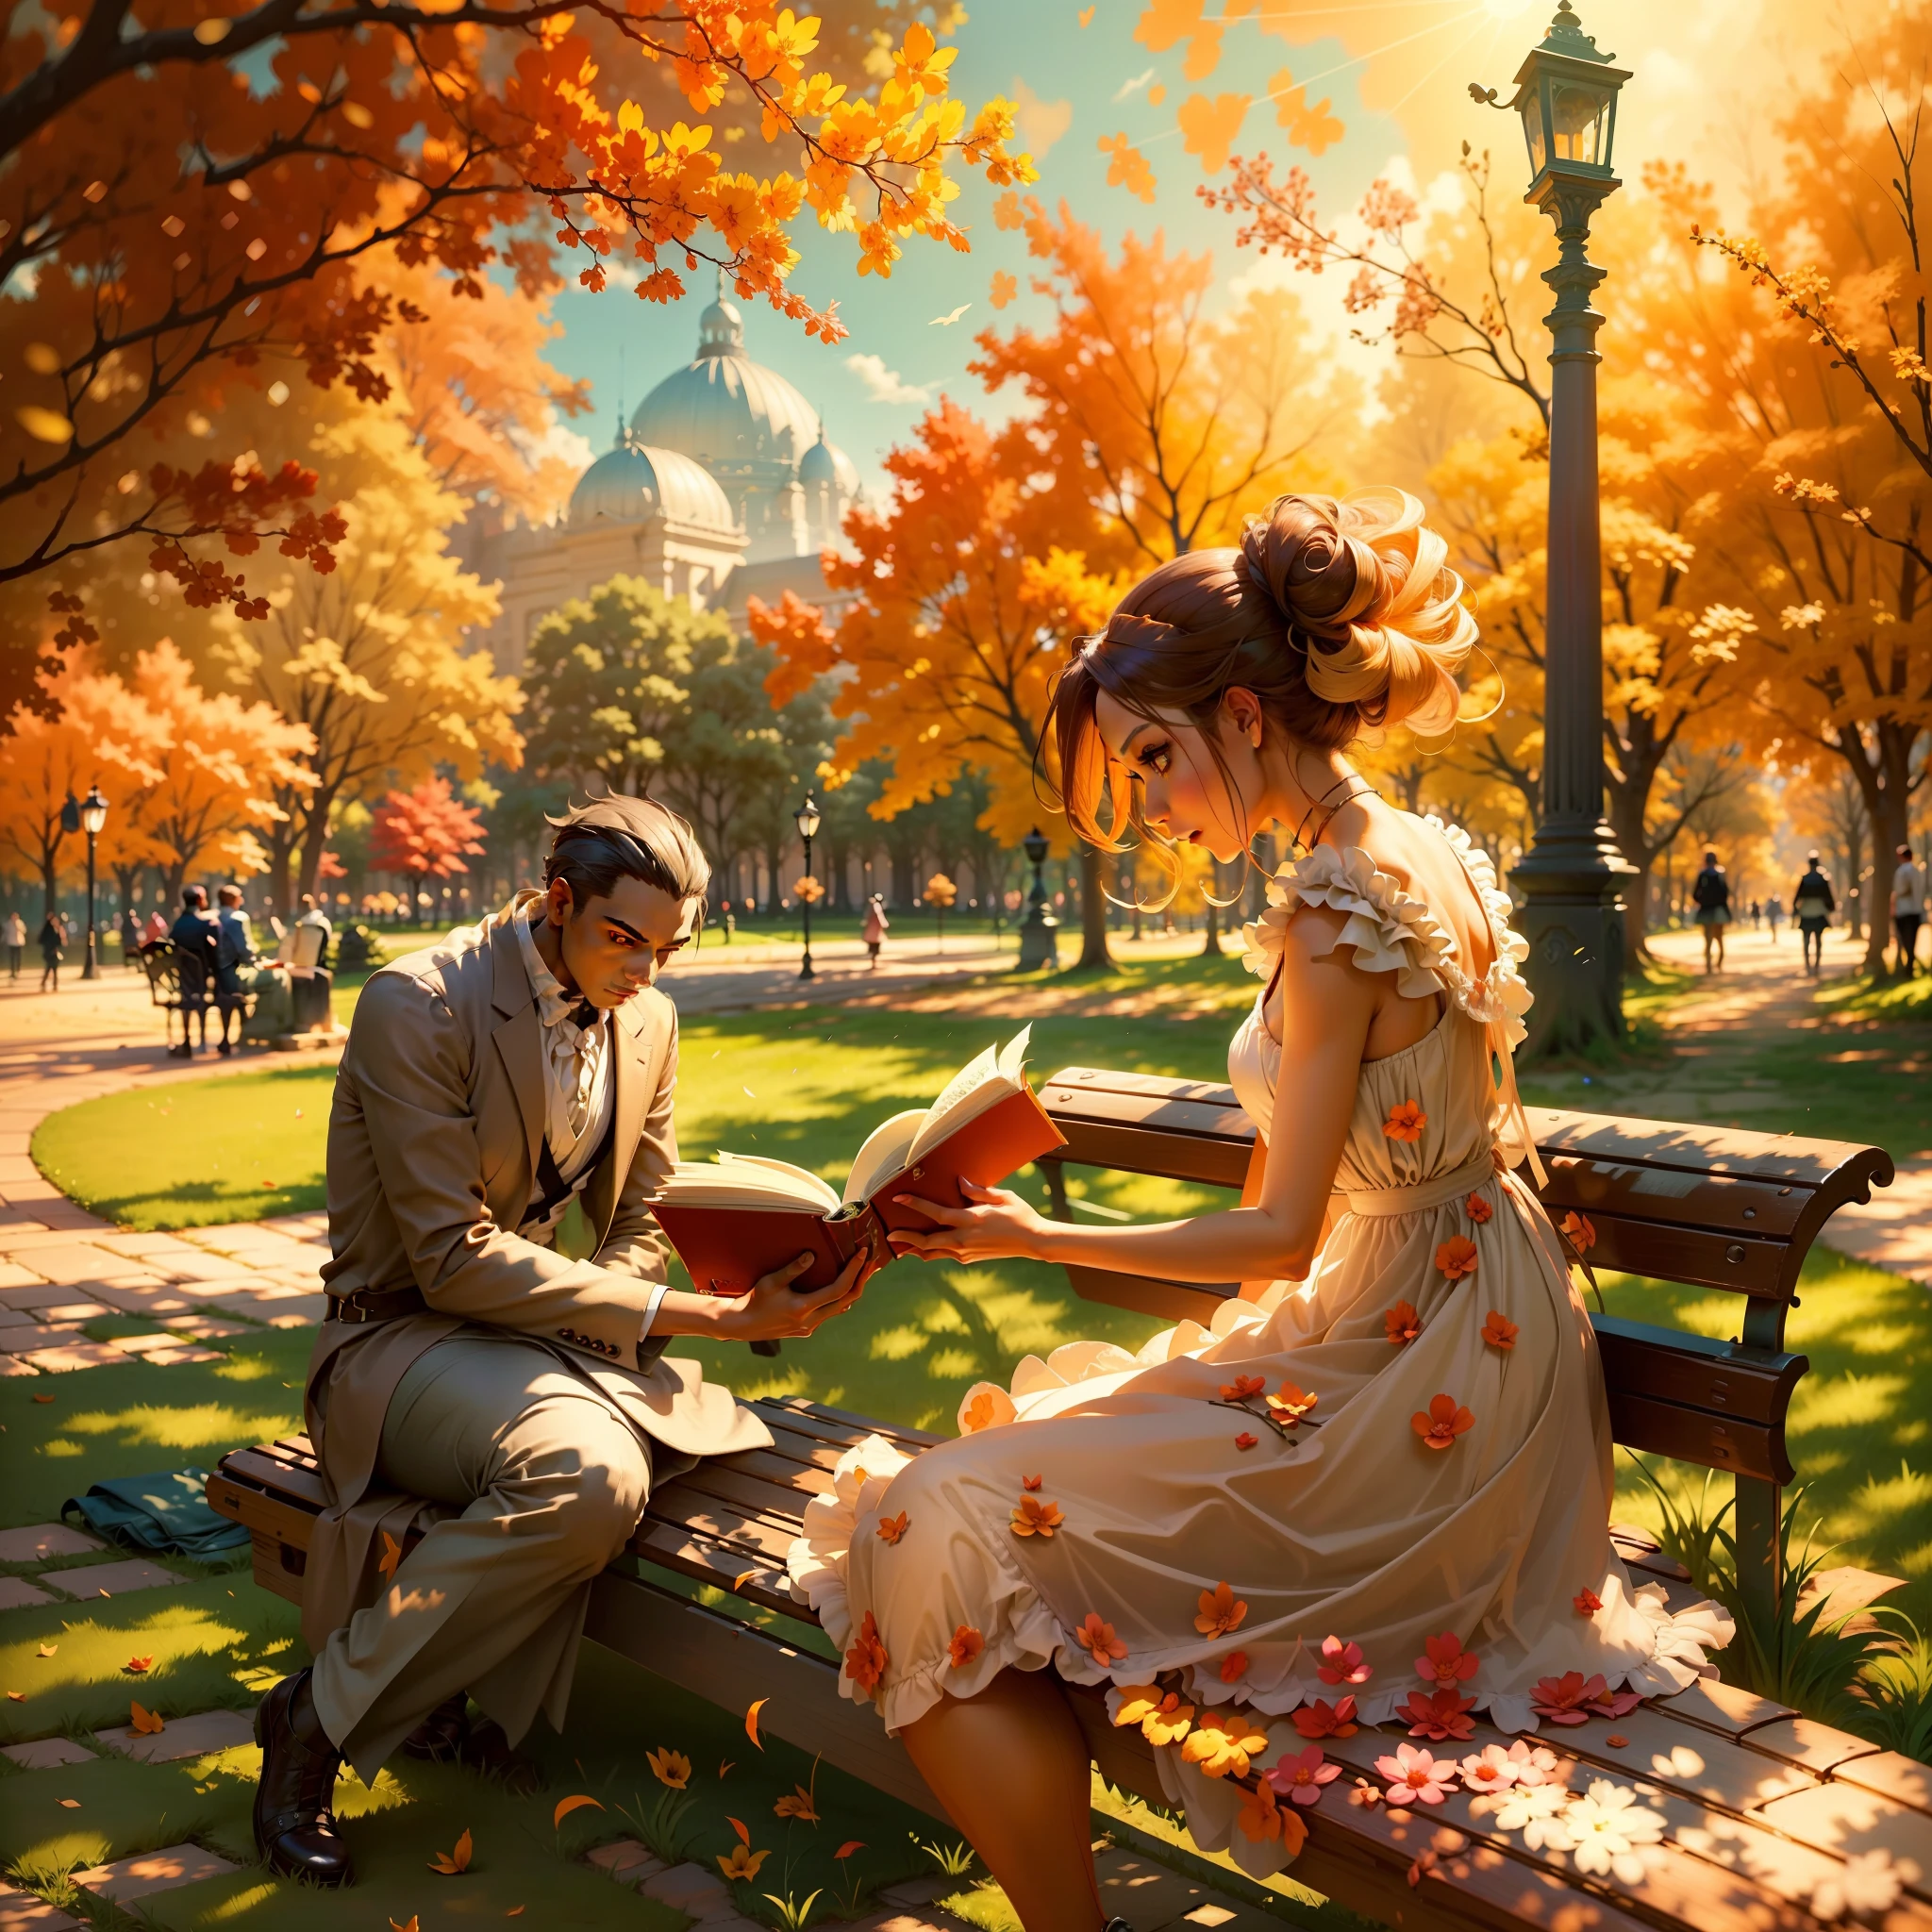 想象一下这样一个场景：一个女人在阳光明媚的下午穿过公园. 她穿着优雅的连衣裙，更加彰显了她的美丽, 她好奇的目光锁定在坐在长椅上的一个男人身上, 完全沉浸在书中. 描述背景中太阳光线营造的充满活力的氛围.